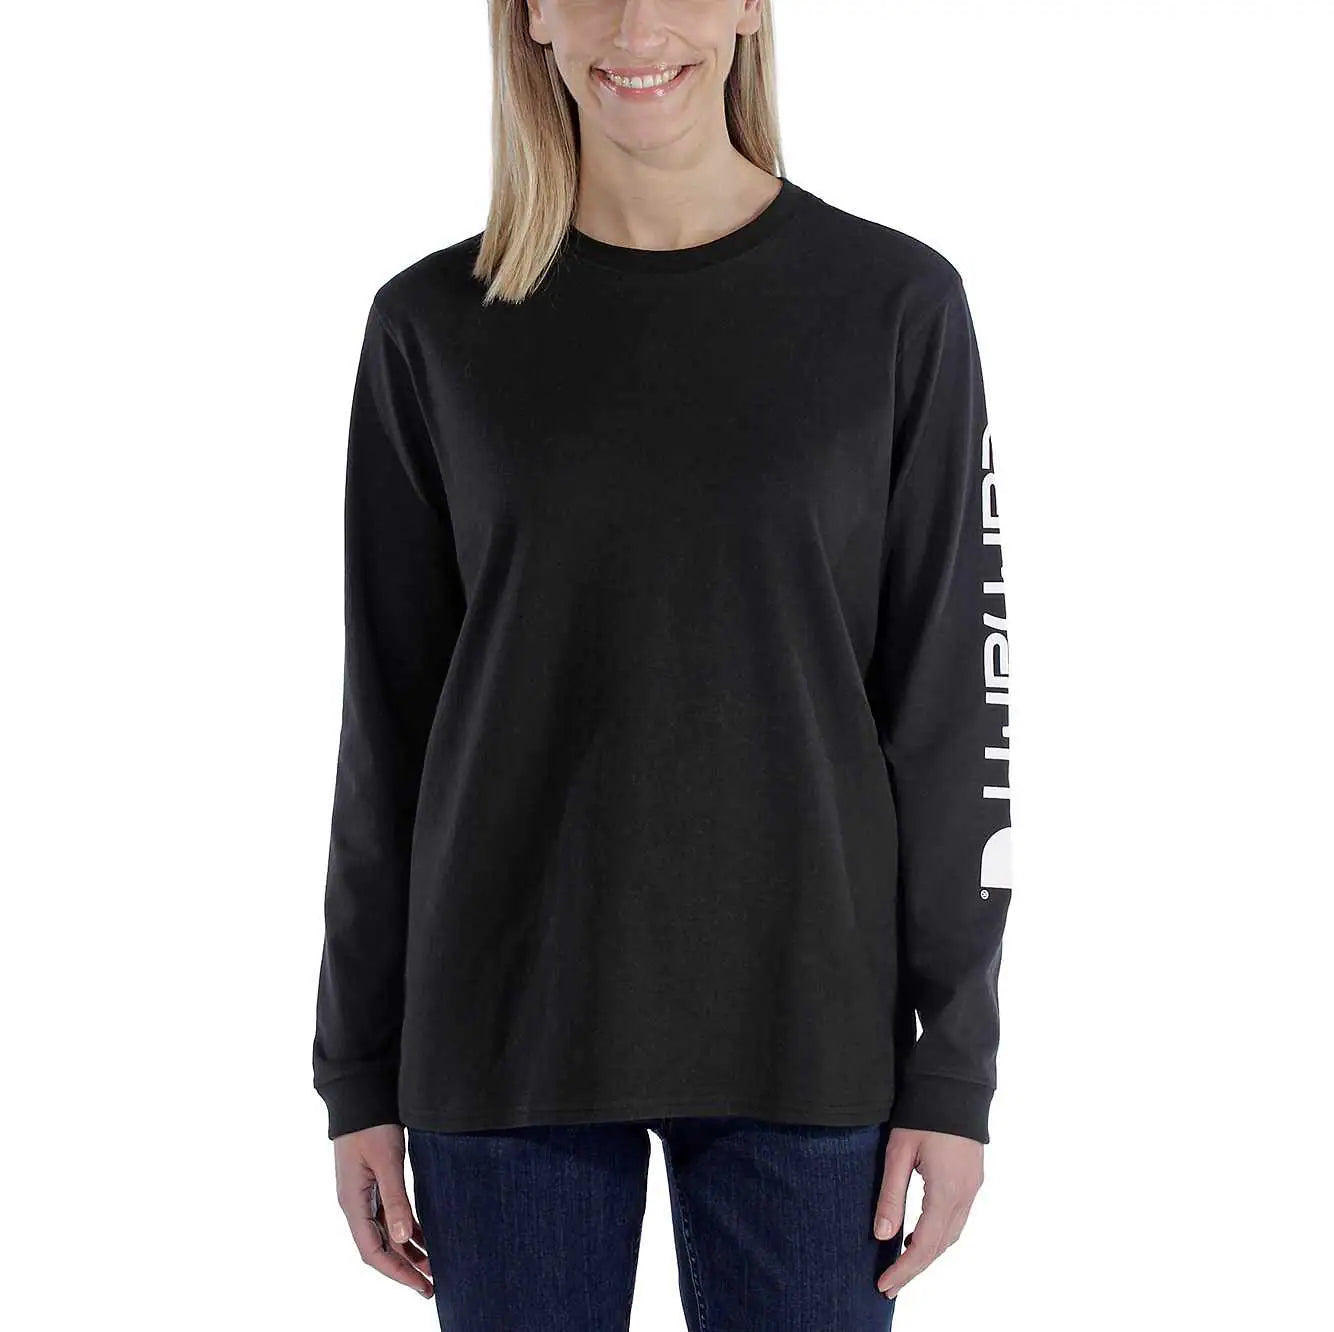 – 103401 Sleeve Logo Long Carhartt Graphic Damen Sleeve T-Shirt arbeitskleidung-store